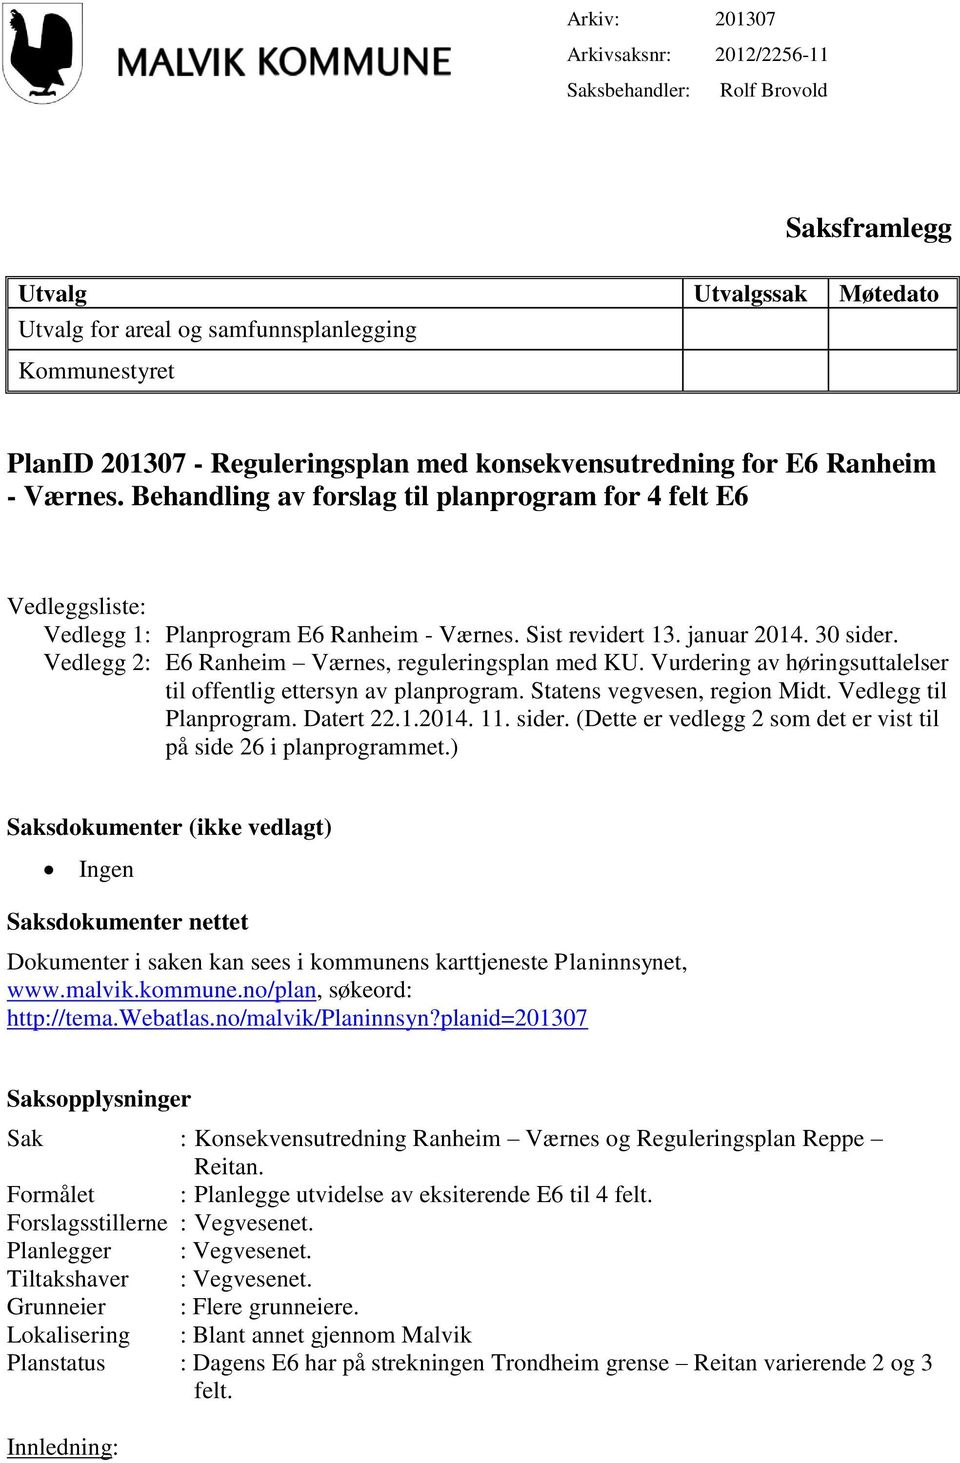 Vedlegg 2: E6 Ranheim Værnes, reguleringsplan med KU. Vurdering av høringsuttalelser til offentlig ettersyn av planprogram. Statens vegvesen, region Midt. Vedlegg til Planprogram. Datert 22.1.2014.